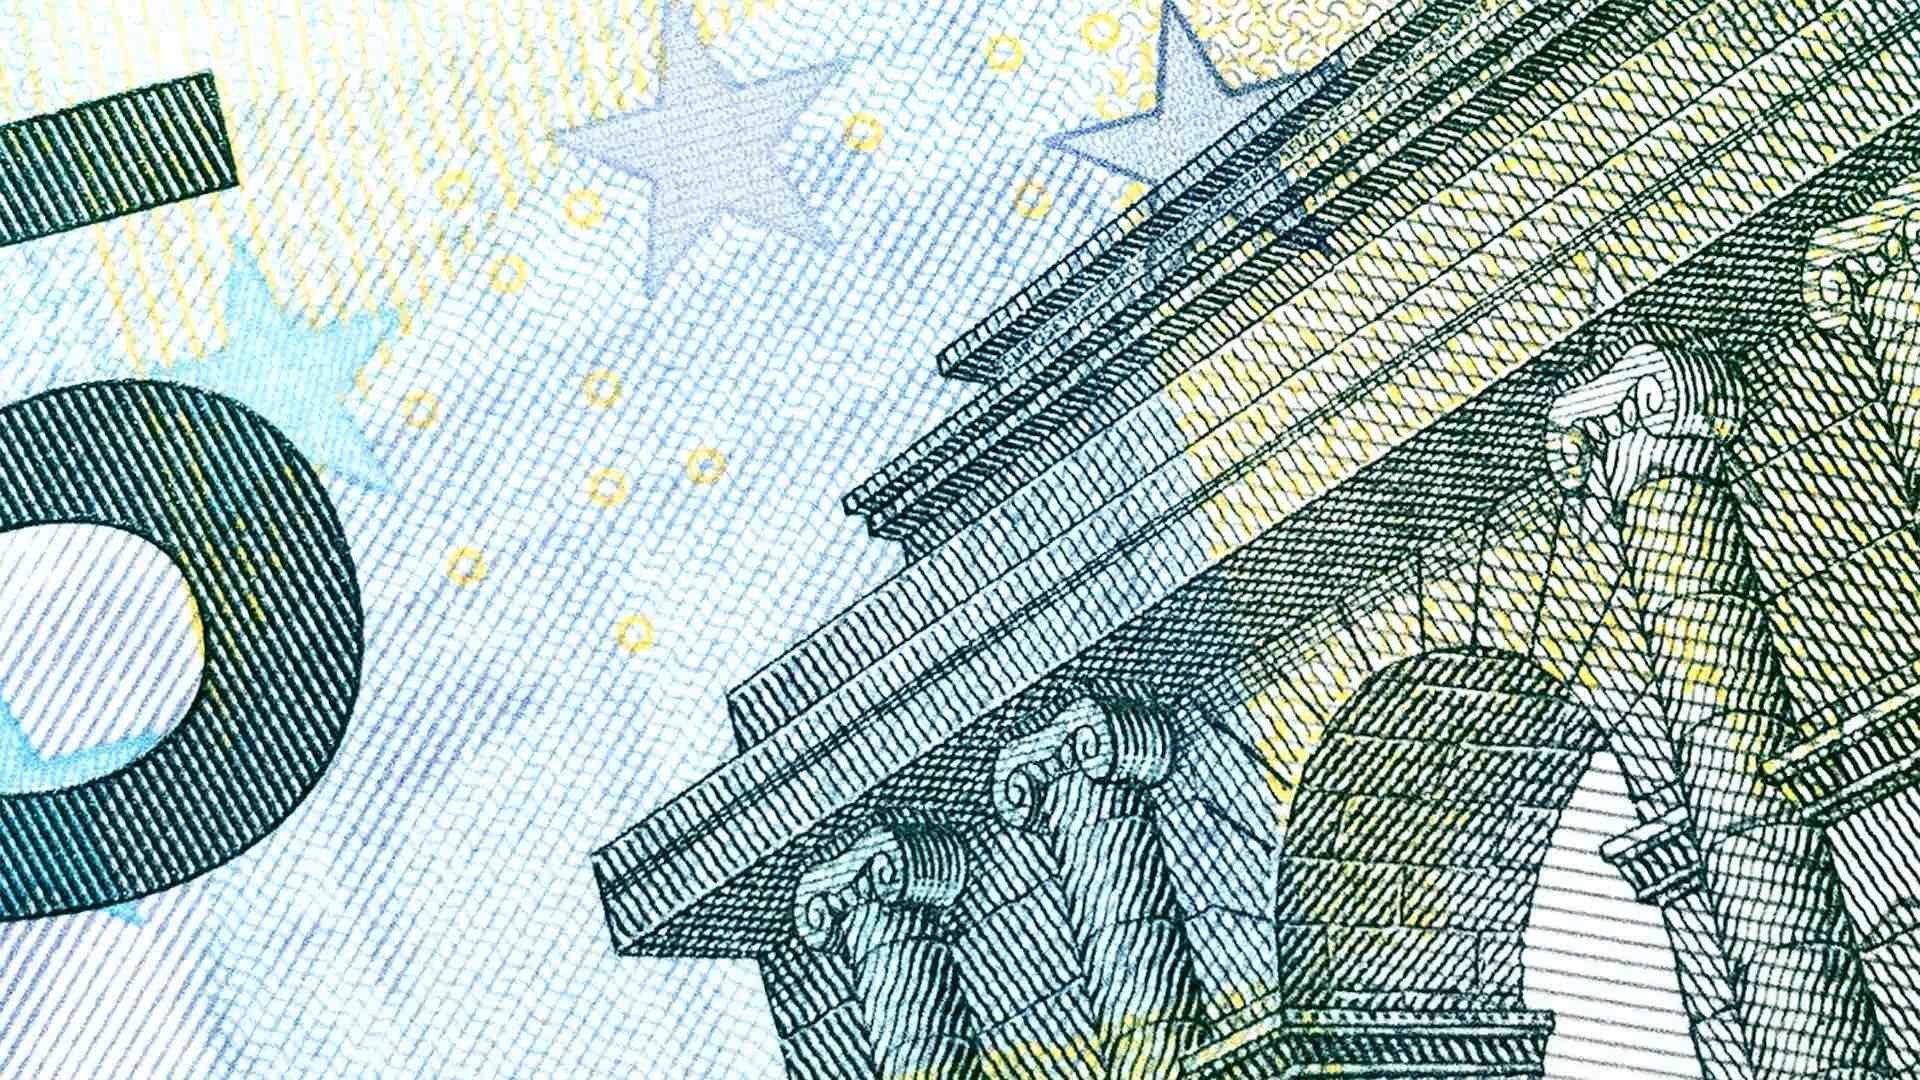 Евро поднимается по отношению к доллару после падения в предыдущий день